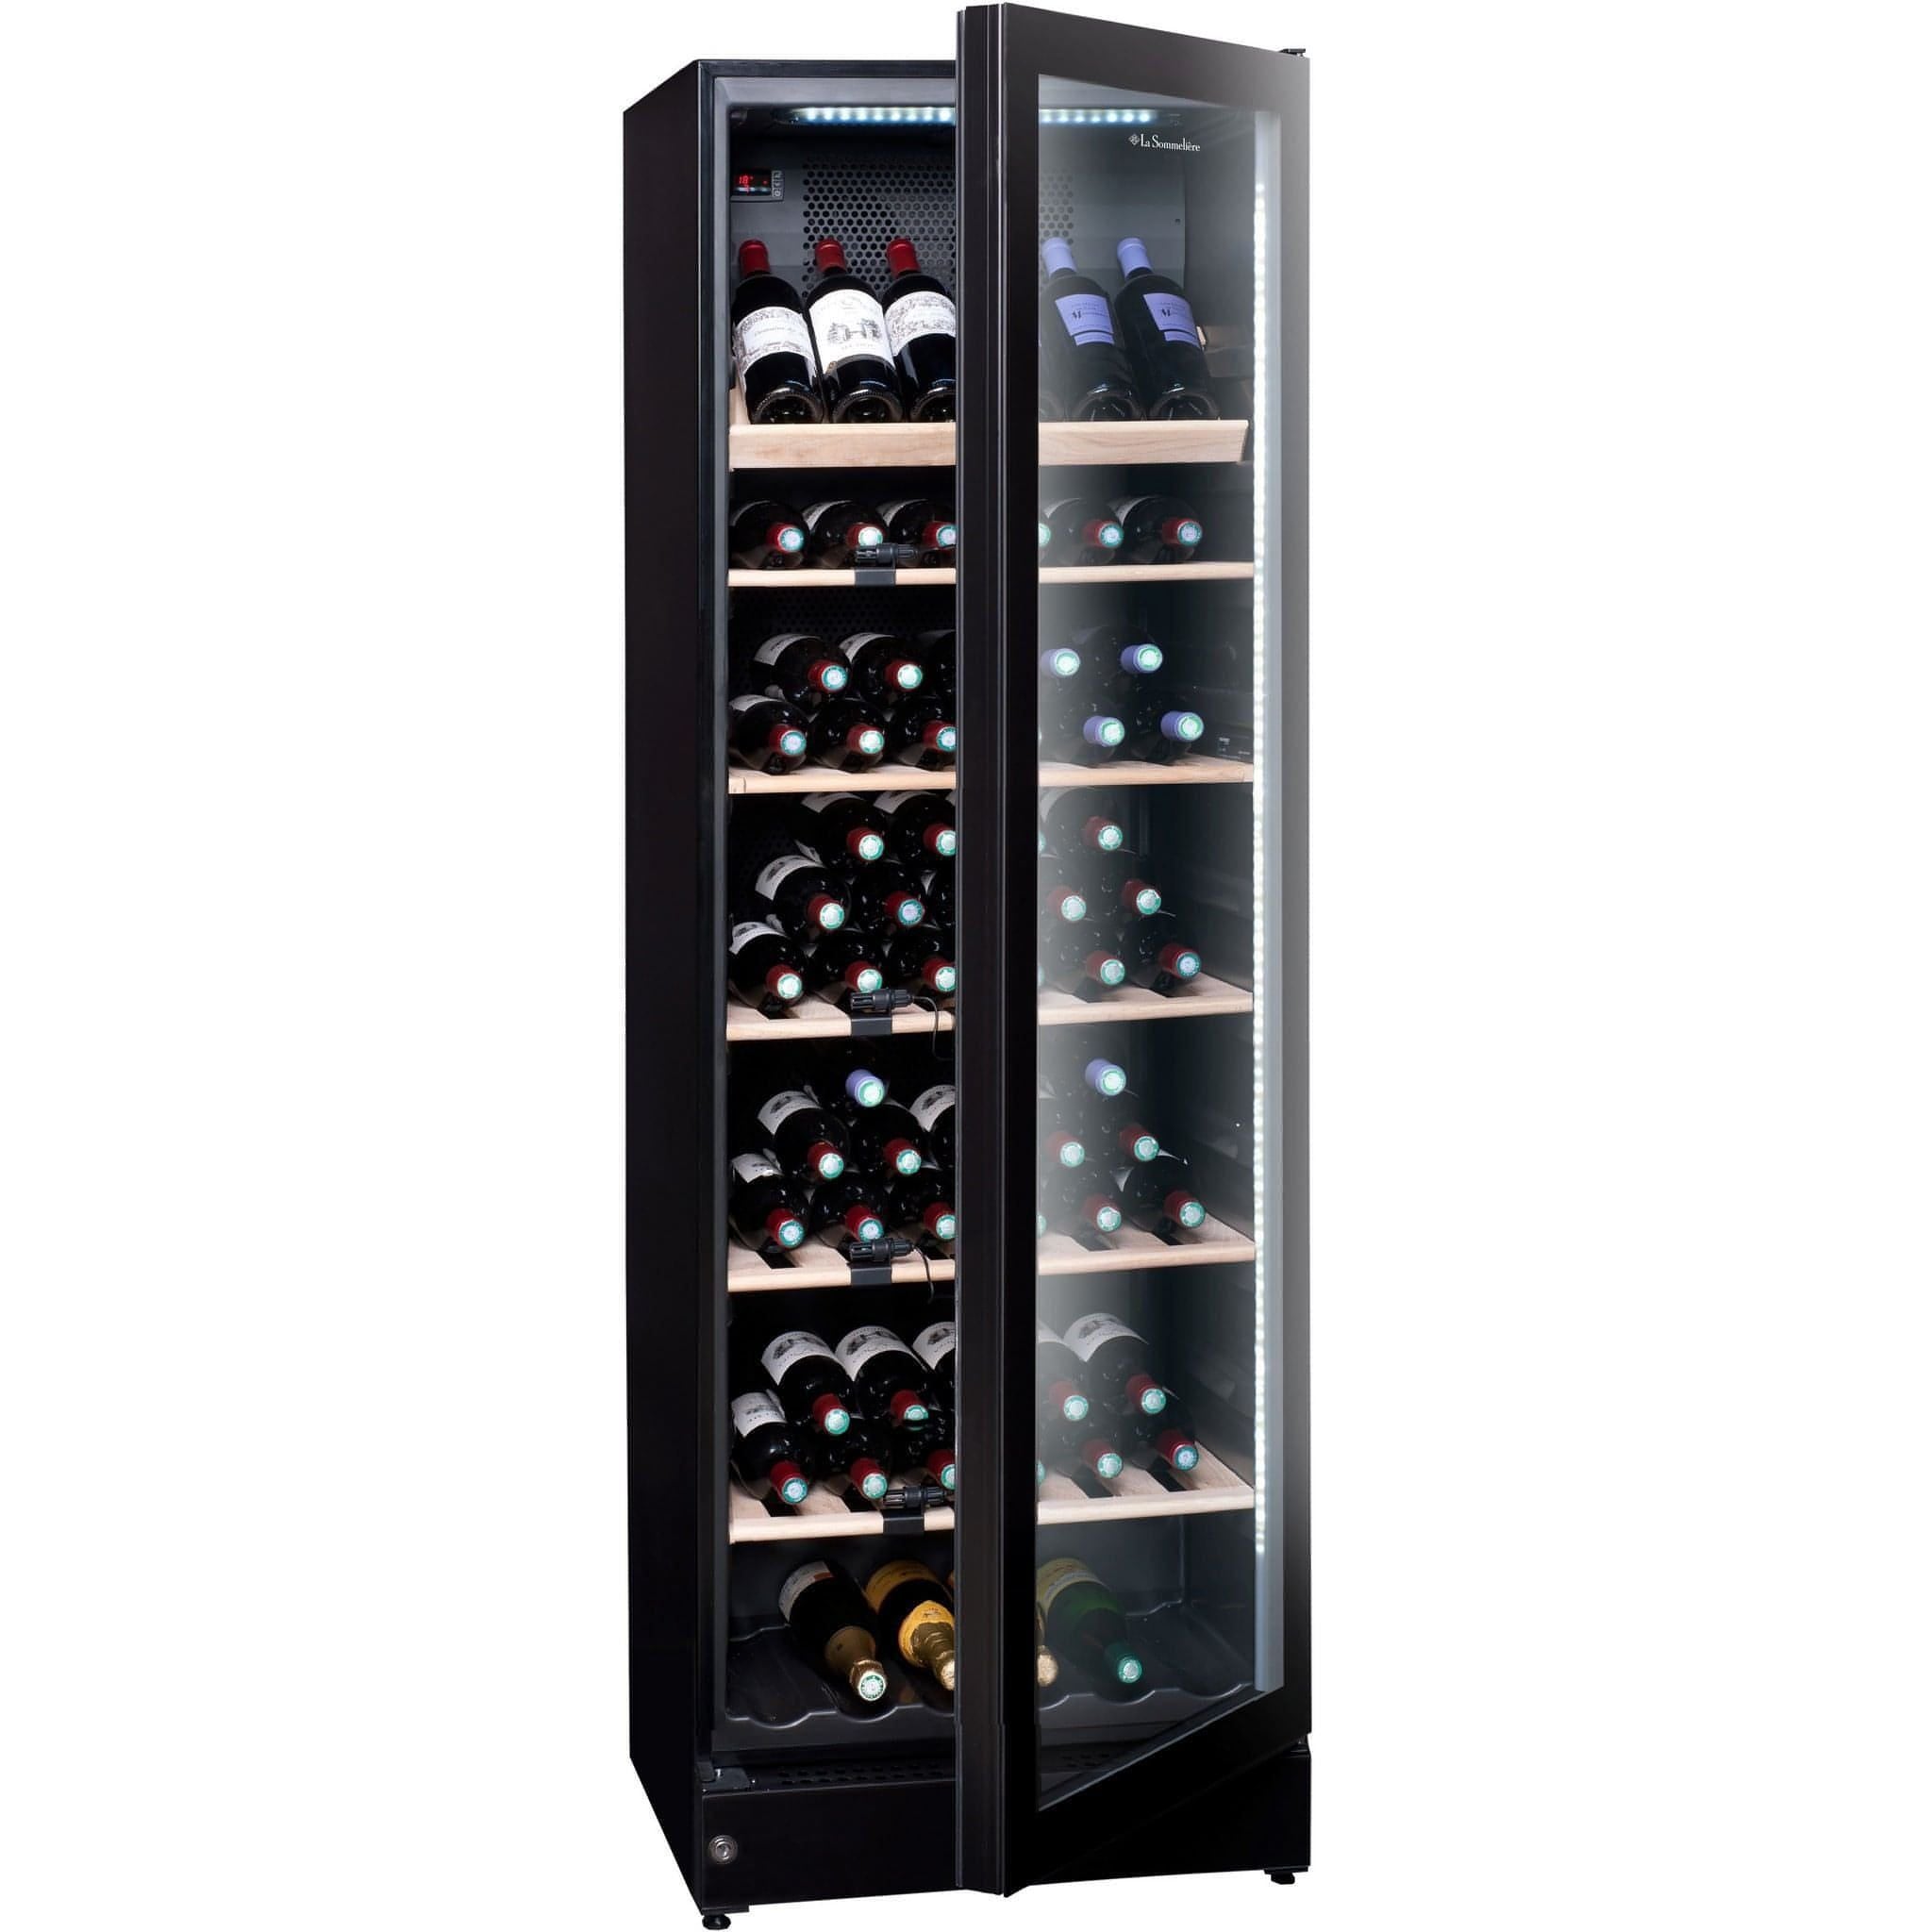 La Sommeliere - 195 Bottles Freestanding Single or Multi Zone Wine Cabinet VIP196